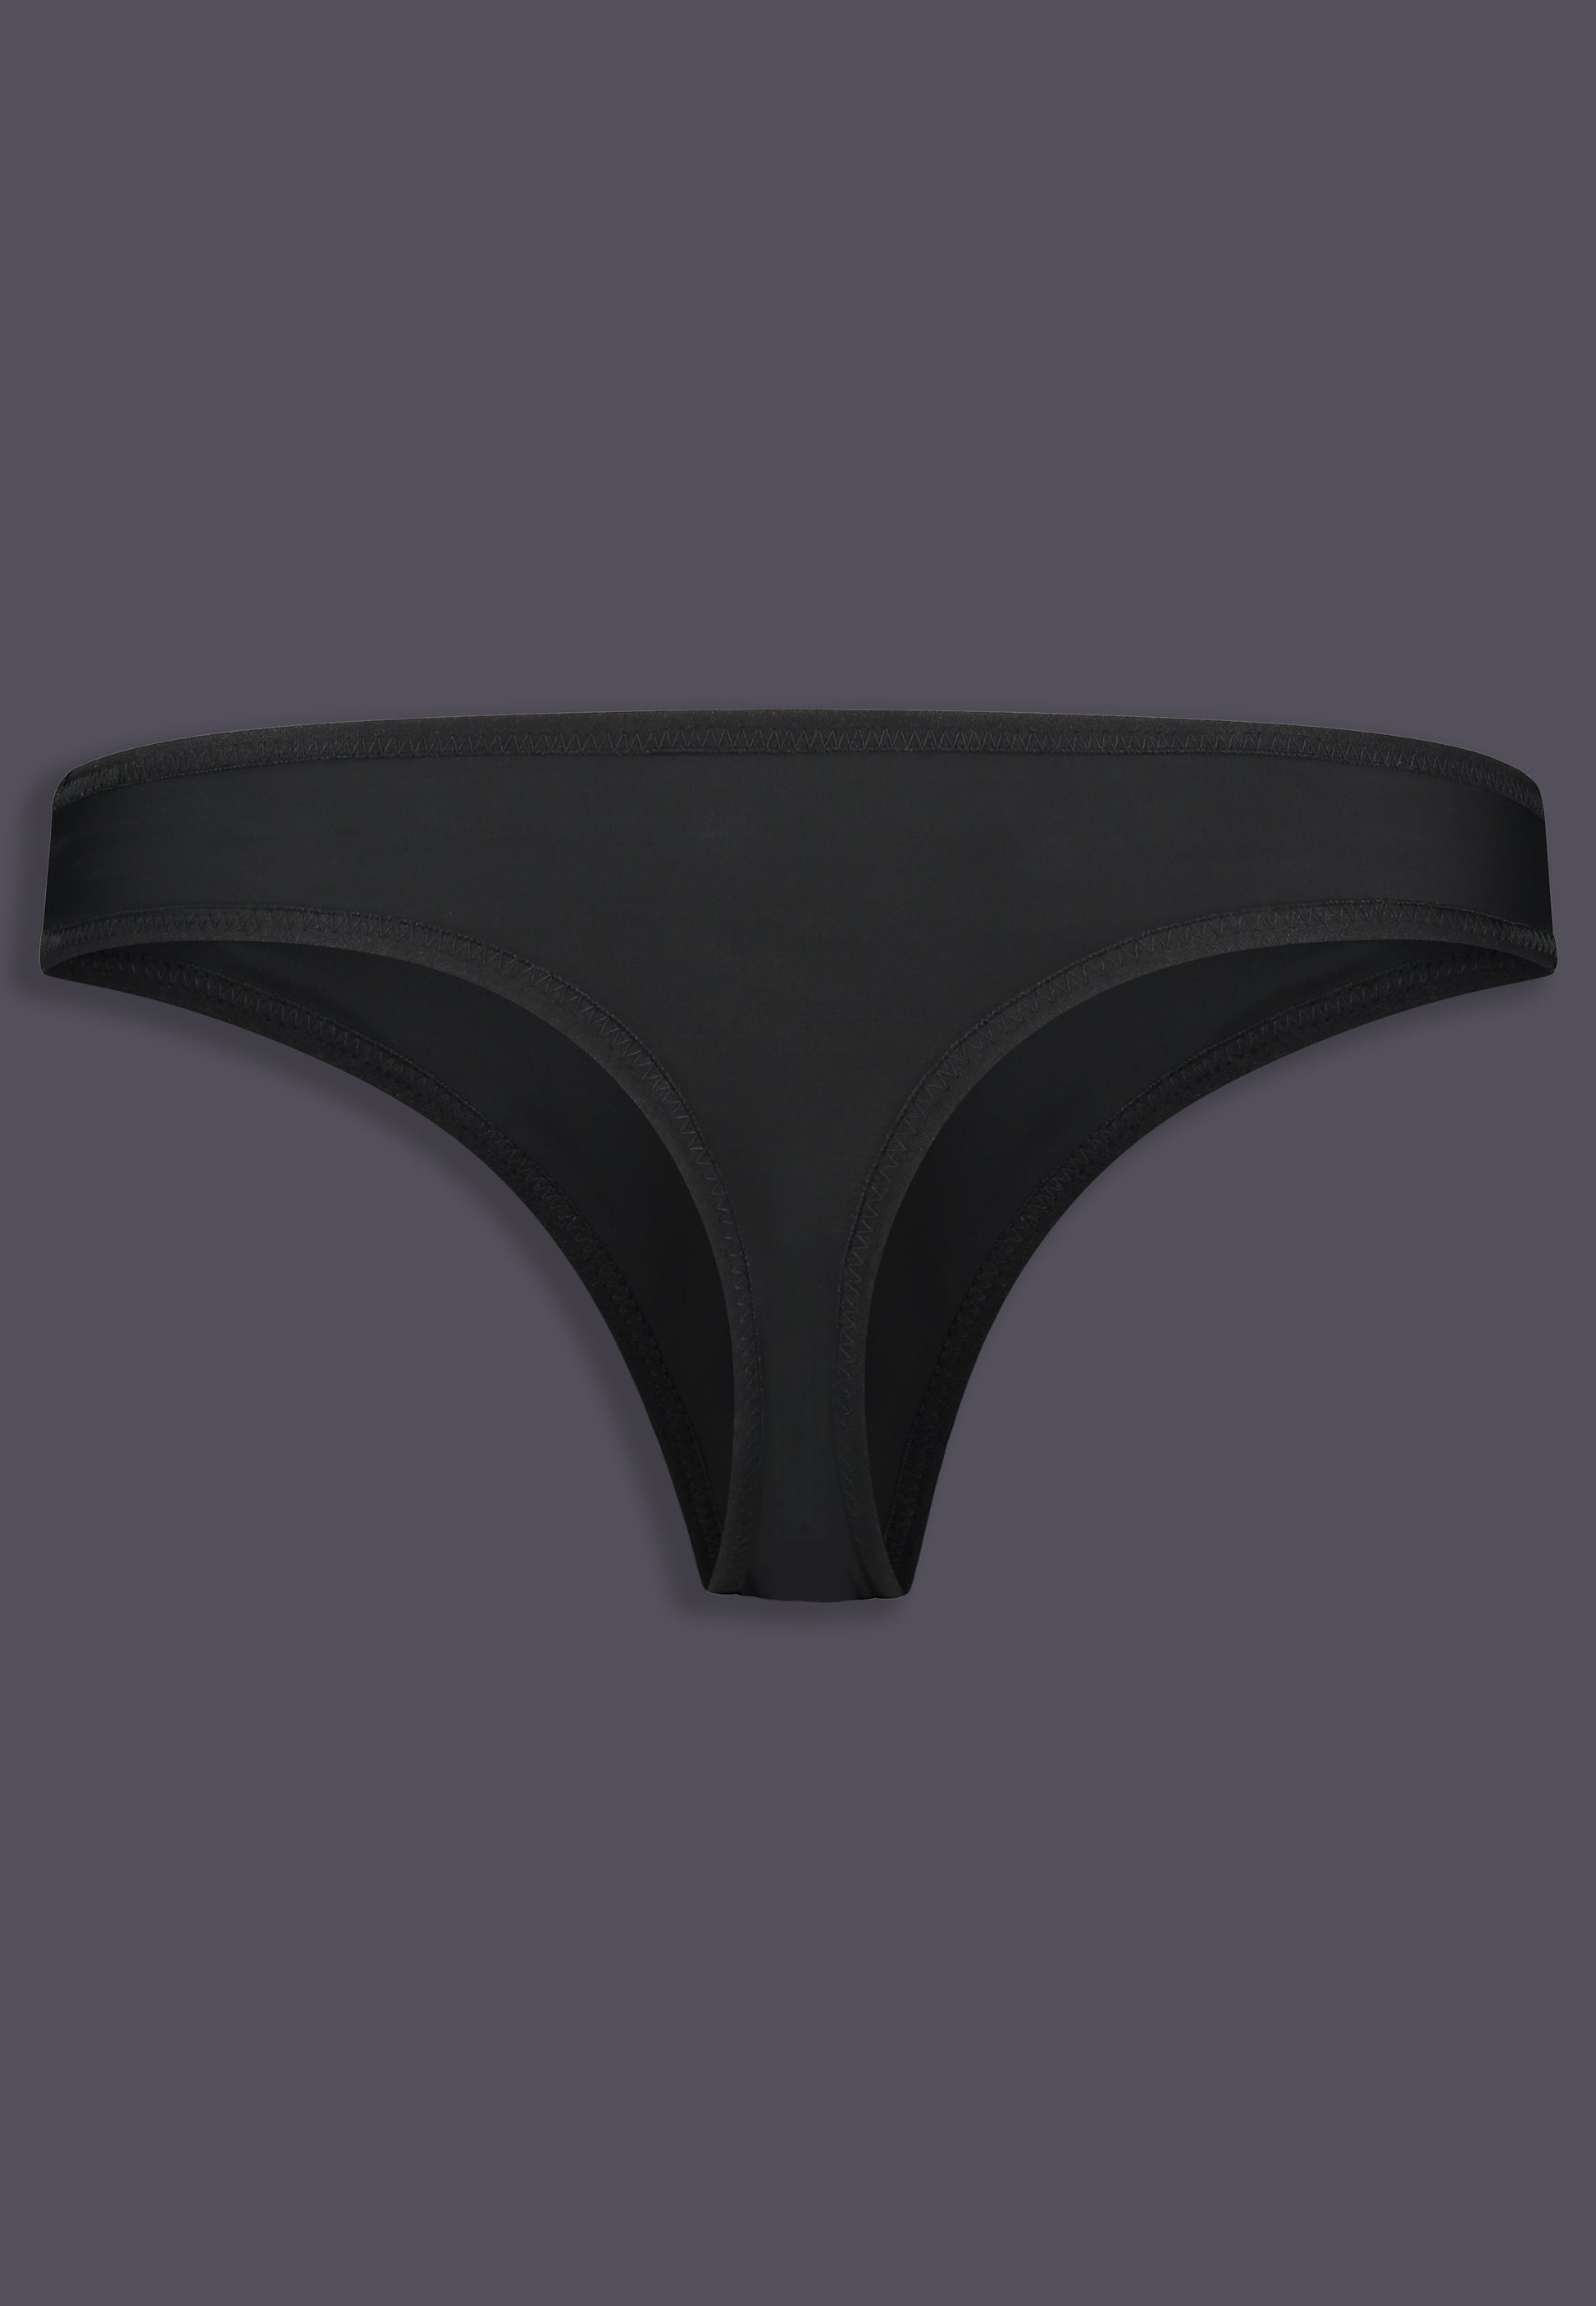 Black Thong Underwear